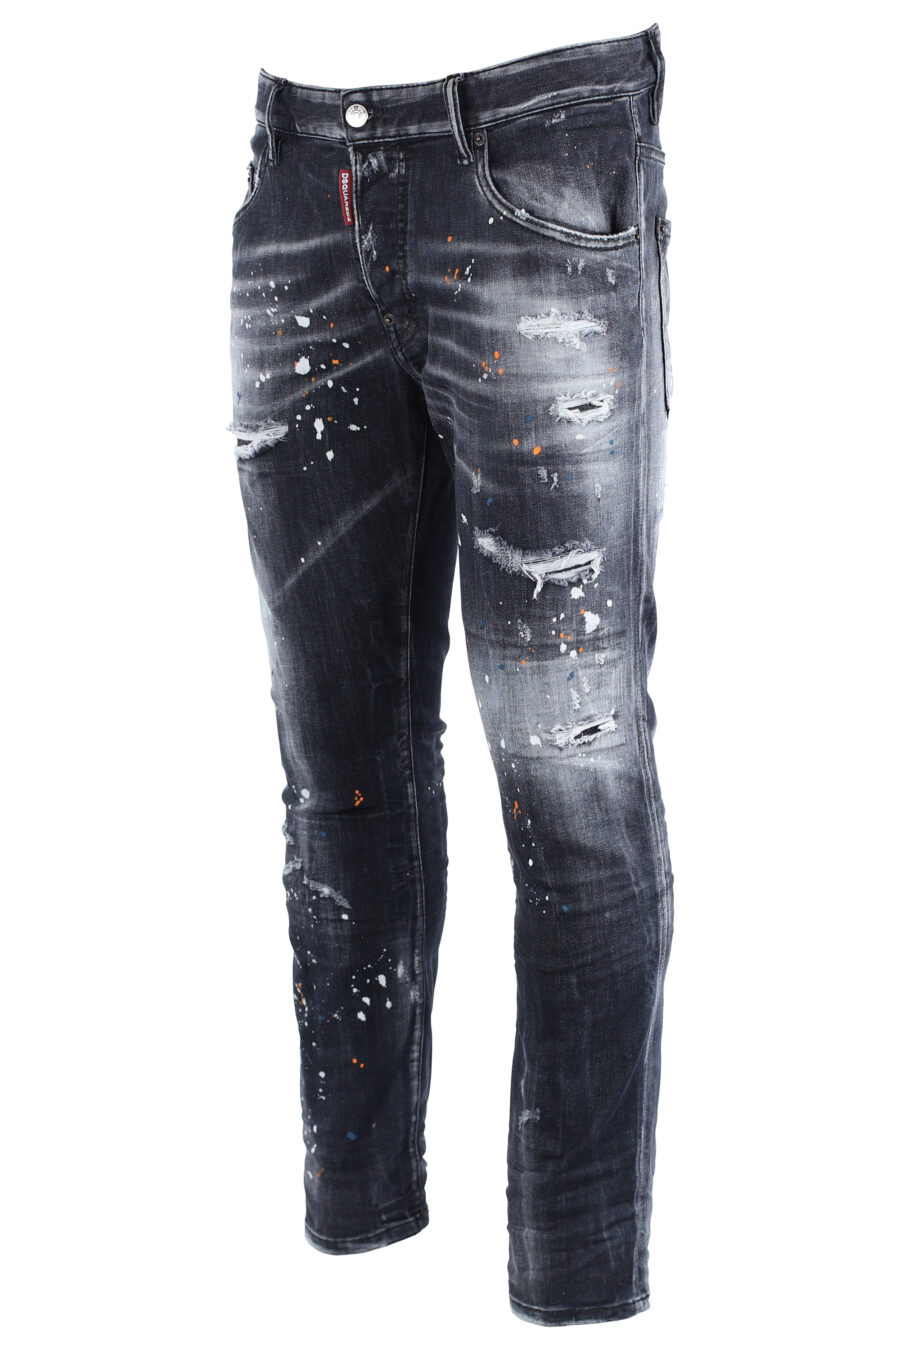 Pantalón vaquero negro "skater jean" desgastado con rotos - IMG 1609